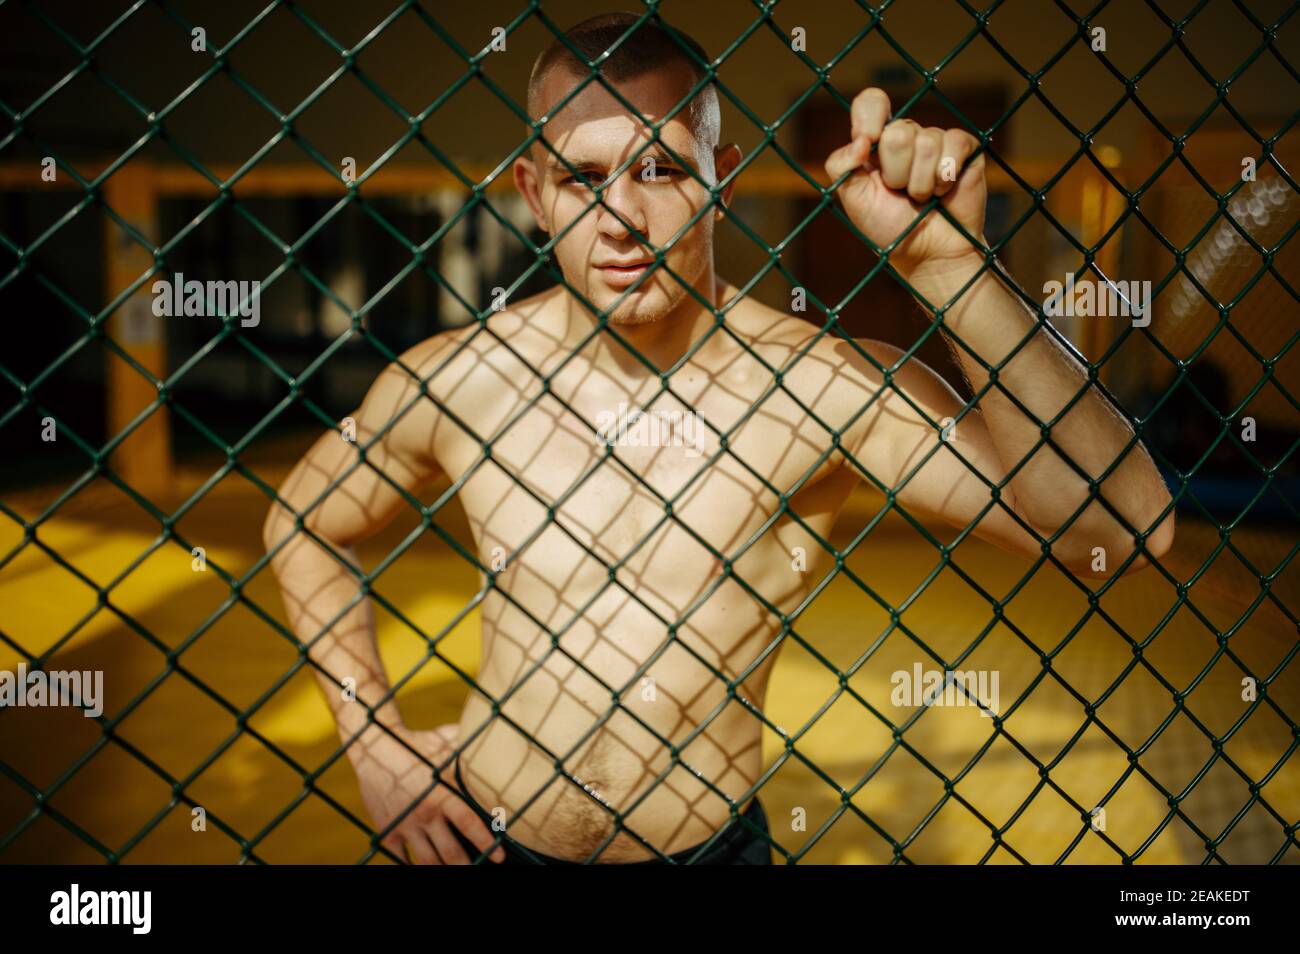 Männlicher MMA-Kämpfer, der am Gitter in einem Käfig steht Stockfoto